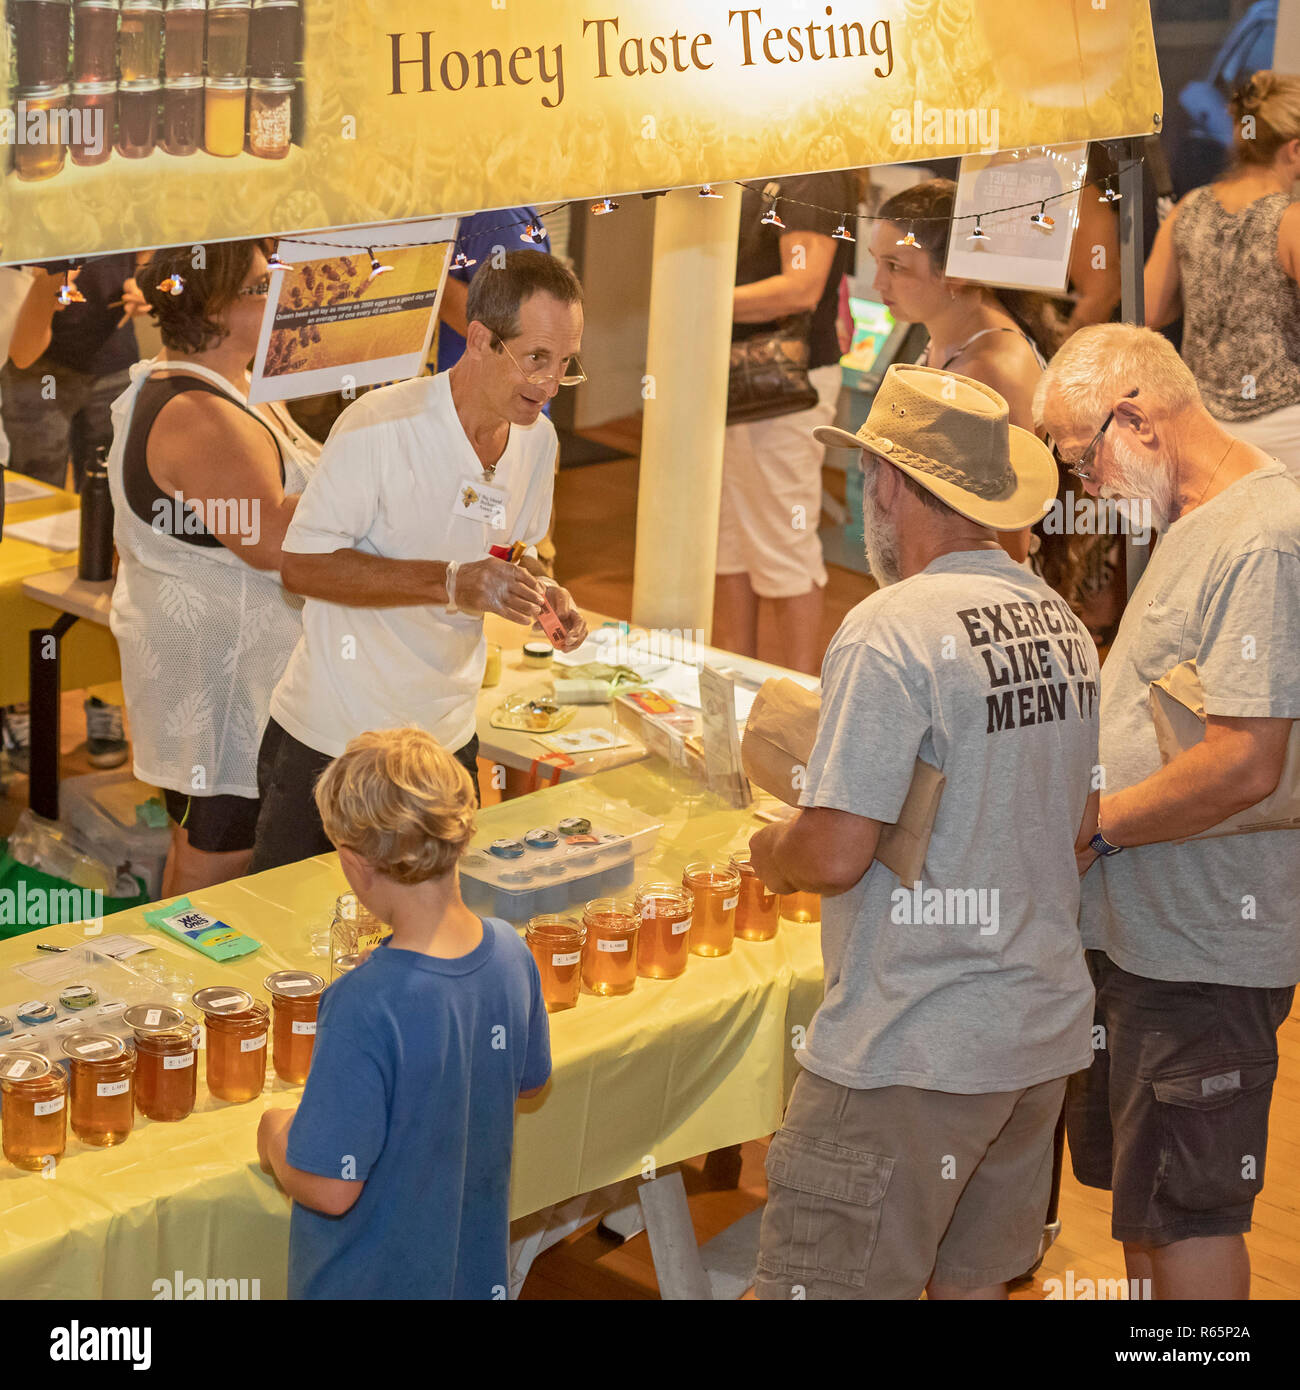 Hilo, Hawaii - un goût de miel à l'essai au cours de l'Assemblée noir et blanc de nuit. Les gens étaient invités à voter pour leur favori miels. Pentecôte et noir Banque D'Images